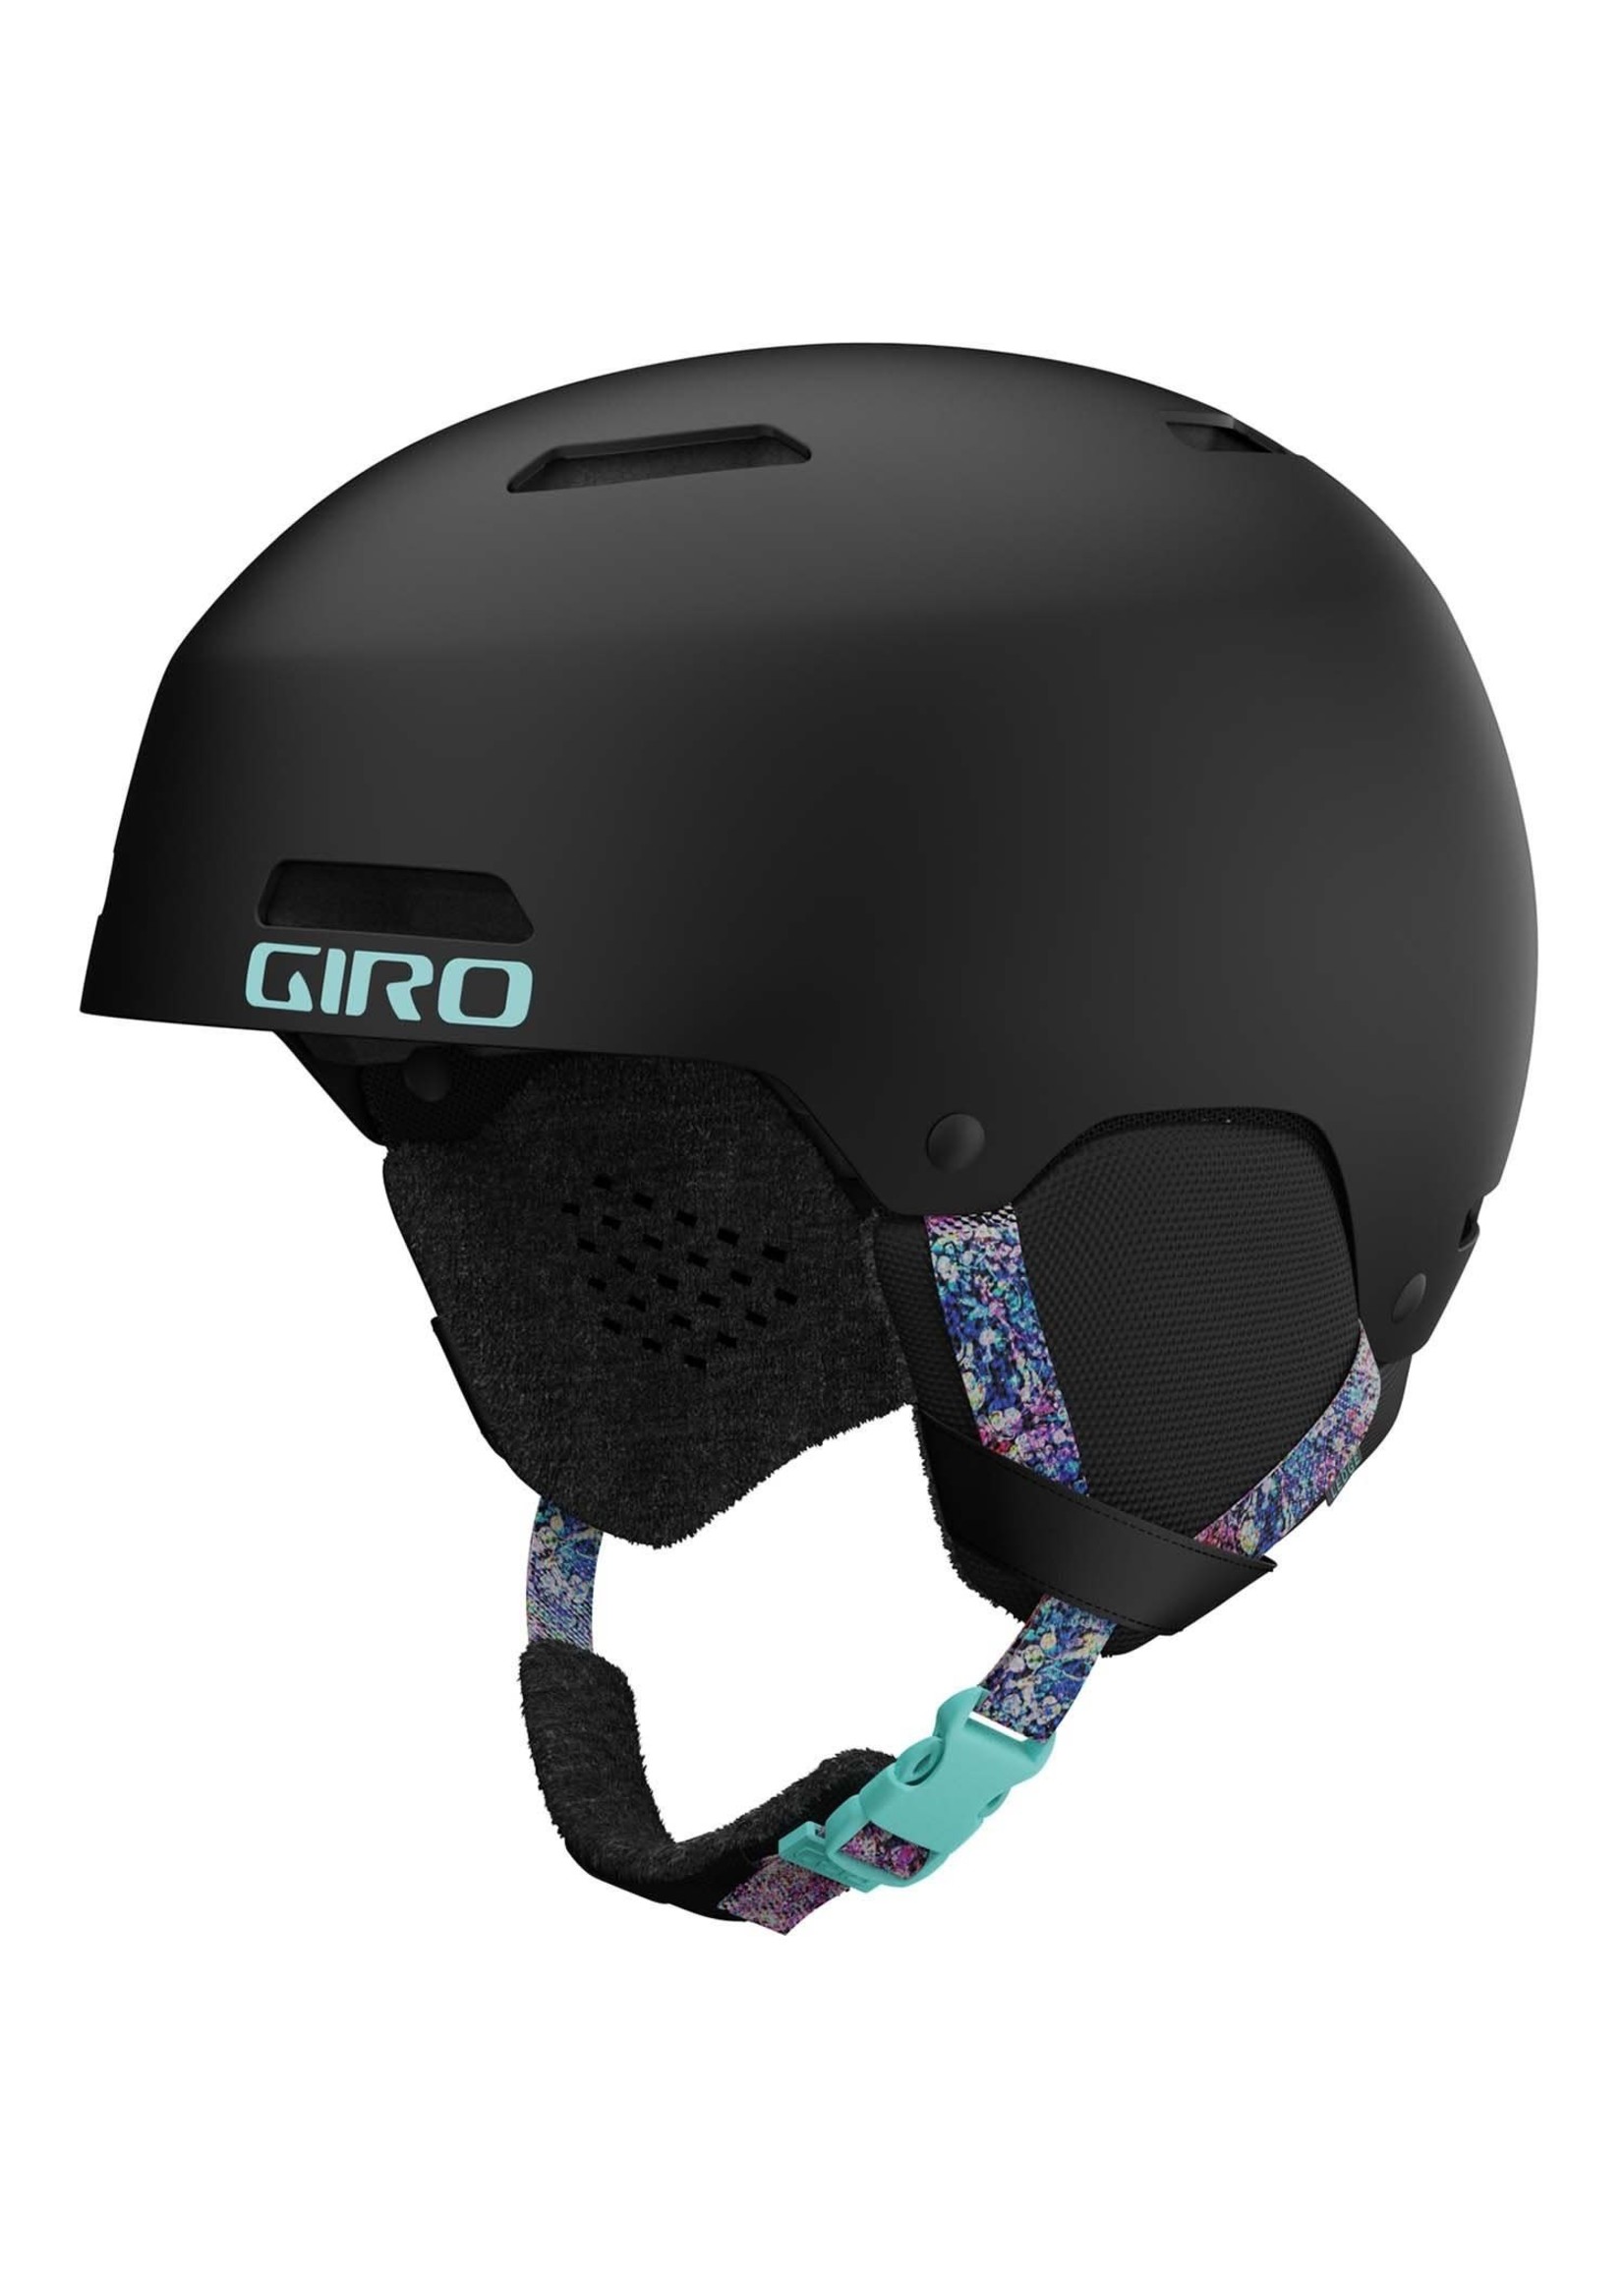 GIRO GIRO LEDGE FS MIPS helmet (52-55.5 cm) JUNIOR/GIRL